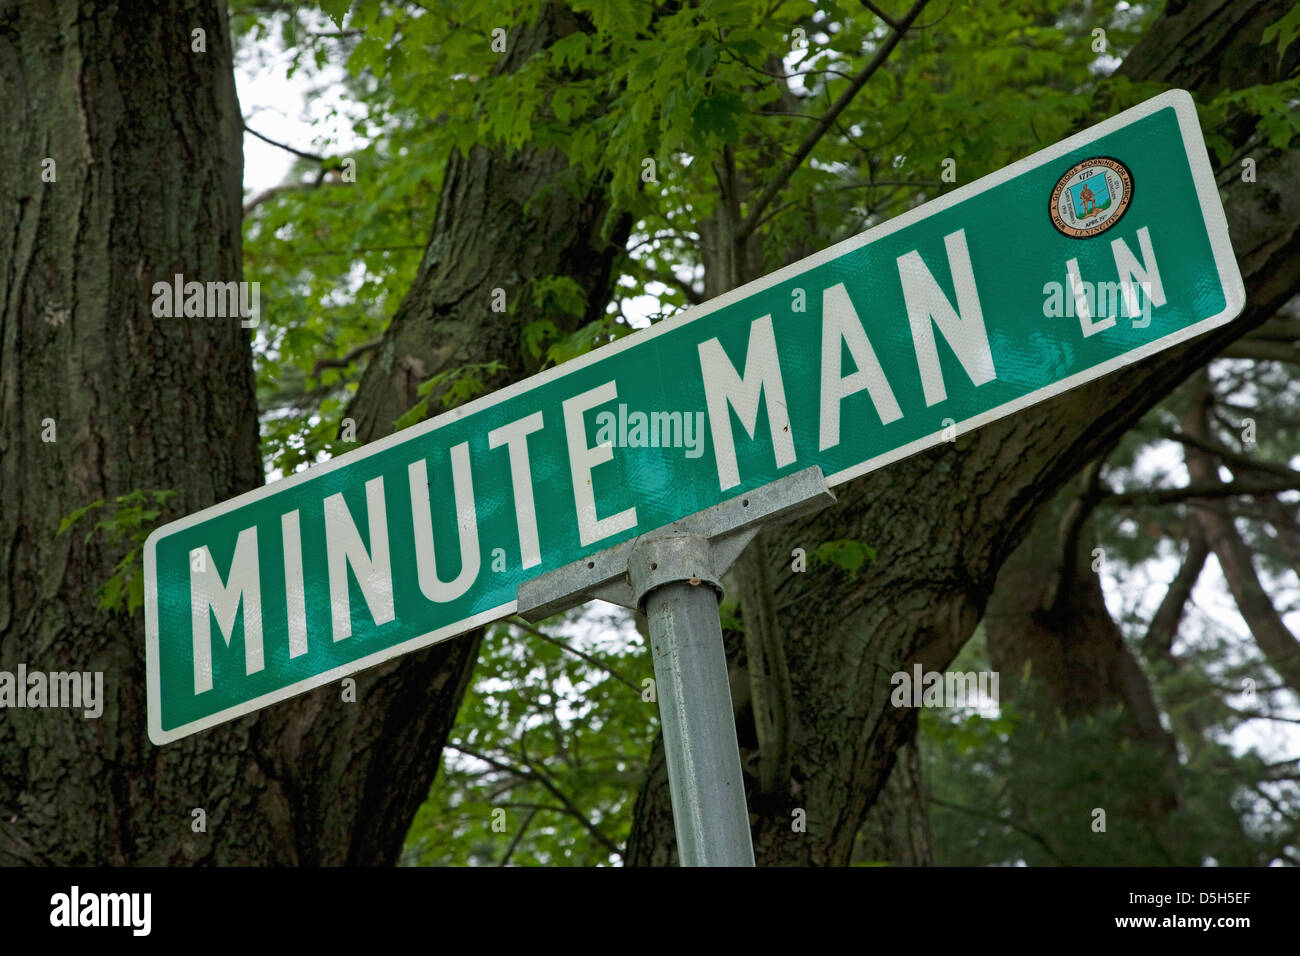 Minute Man Lane, à l'extérieur de Lexington MA à symboliser la Minute Man des soldats de la guerre révolutionnaire, 1776, MA Banque D'Images